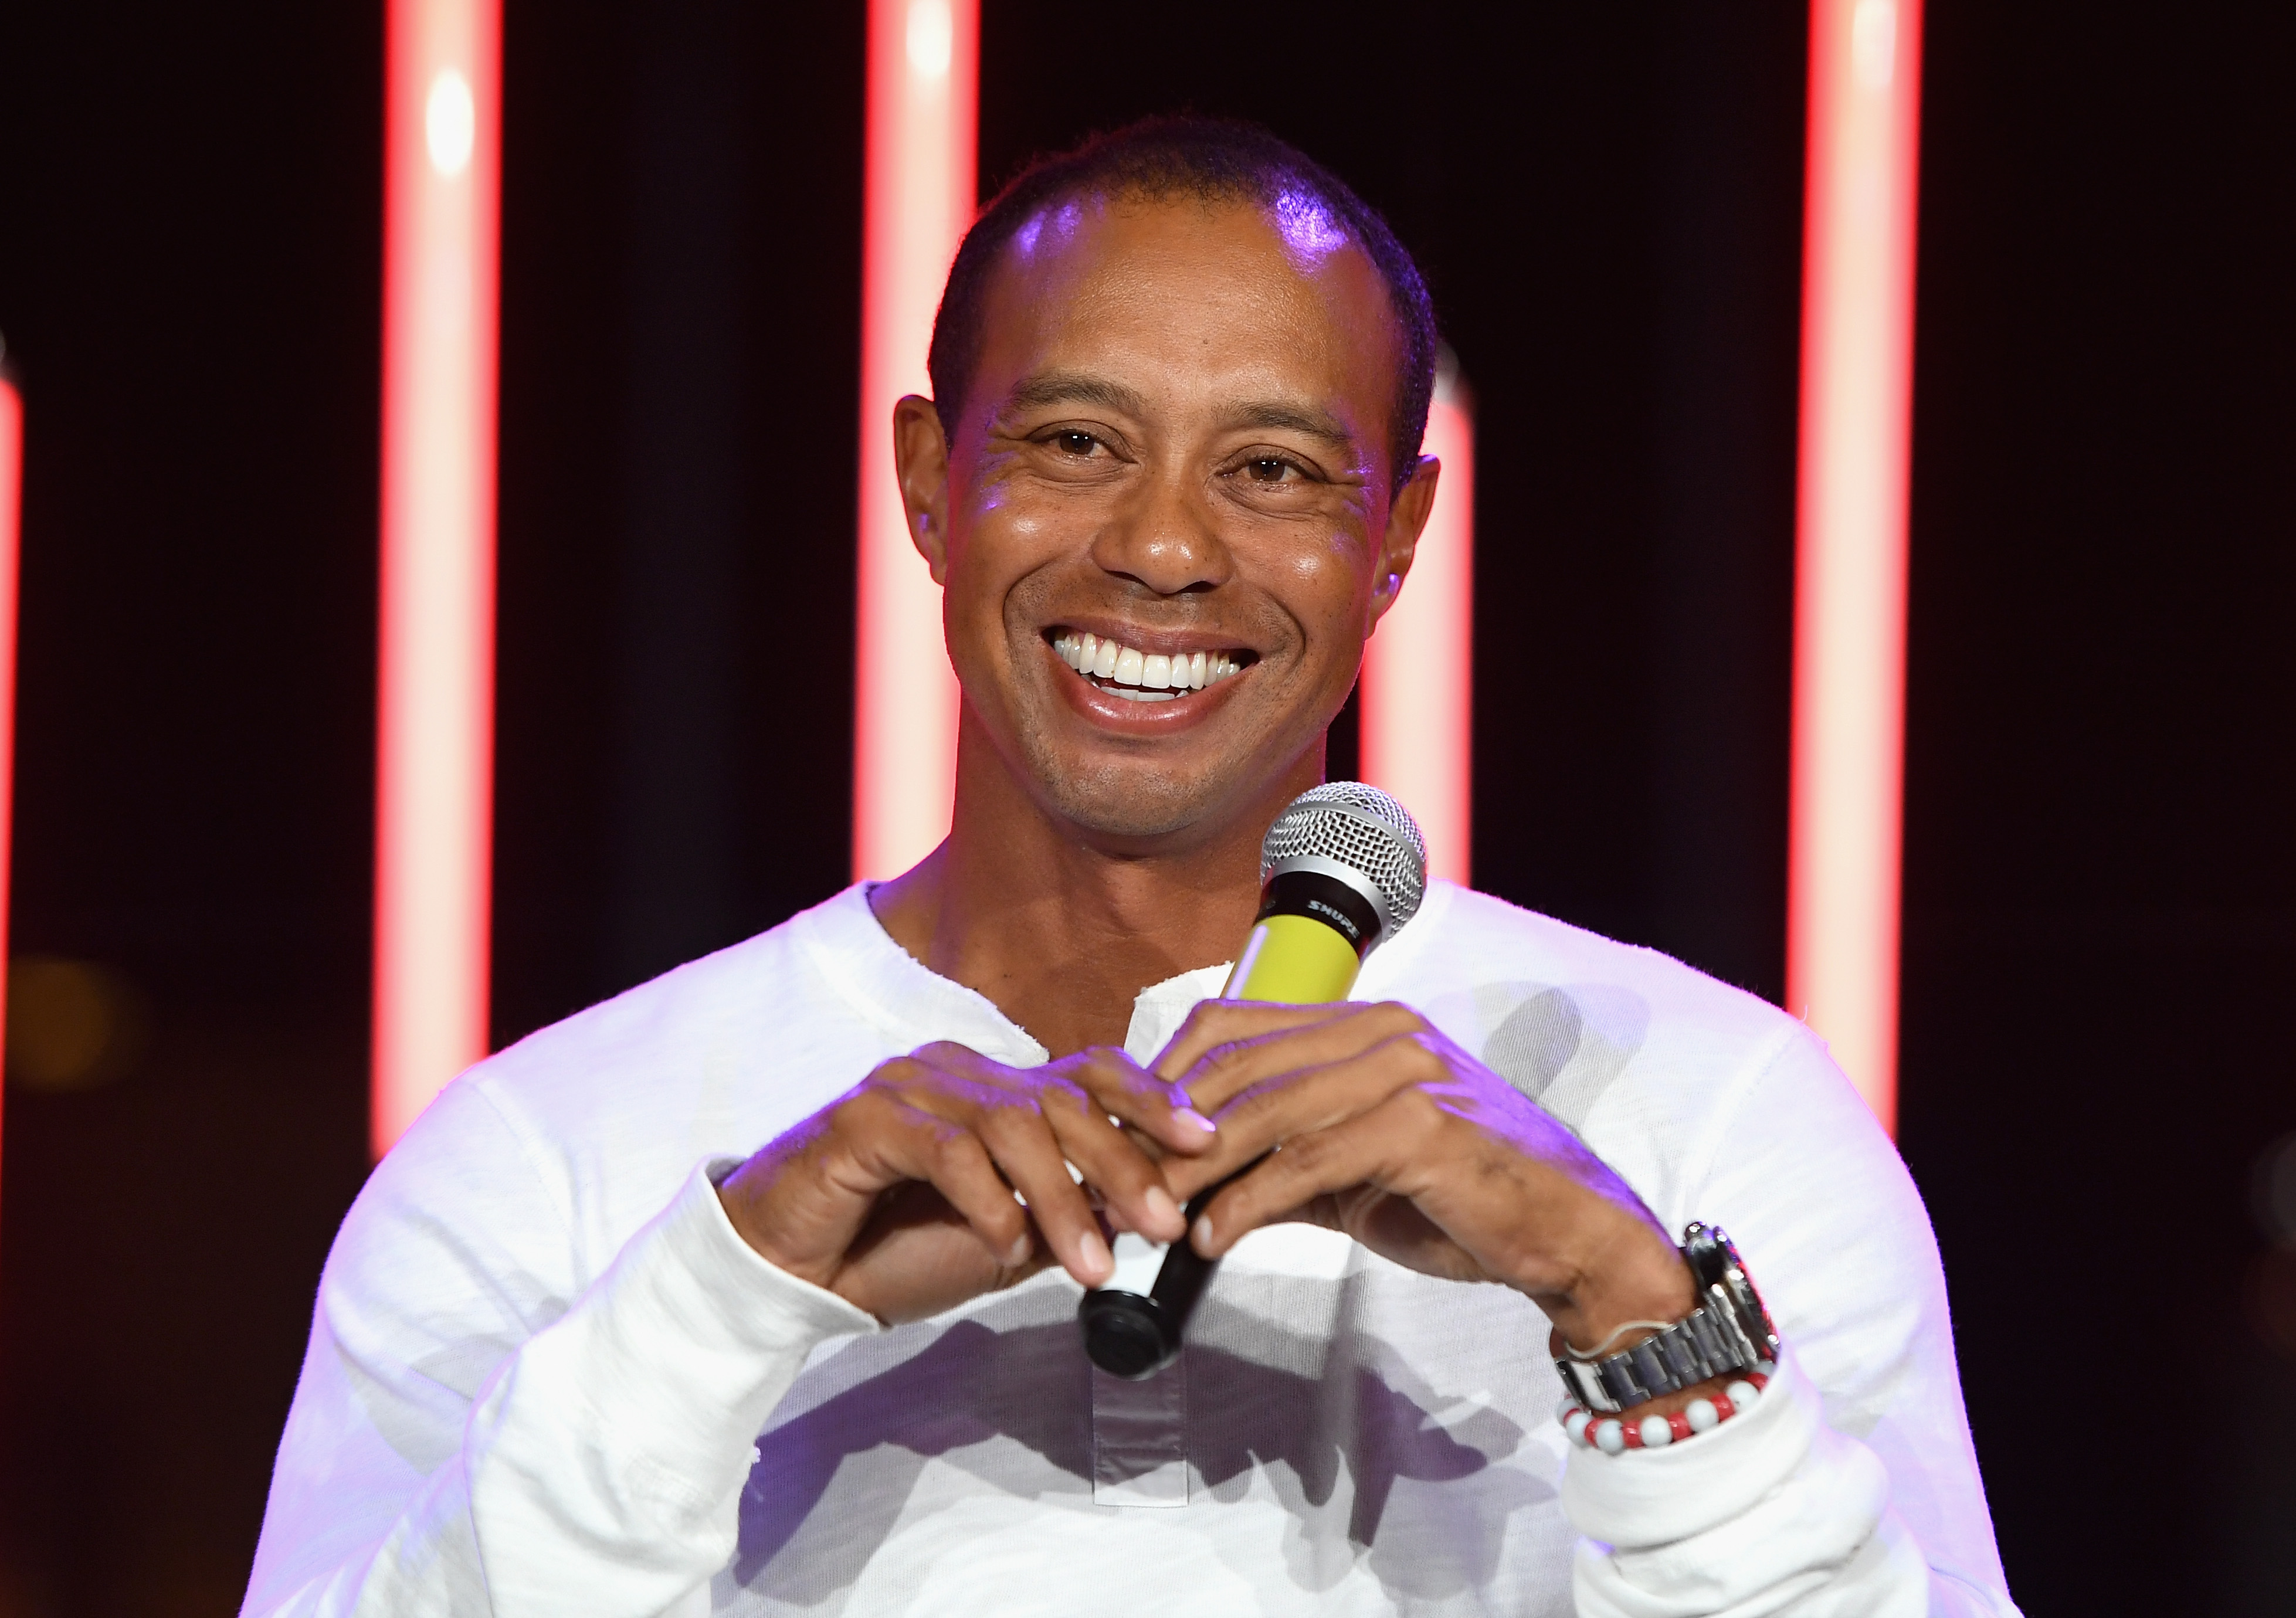 Tacos de golfe supostamente usados ​​por Tiger Woods são vendidos por US $  5,2 milhões - Forbes